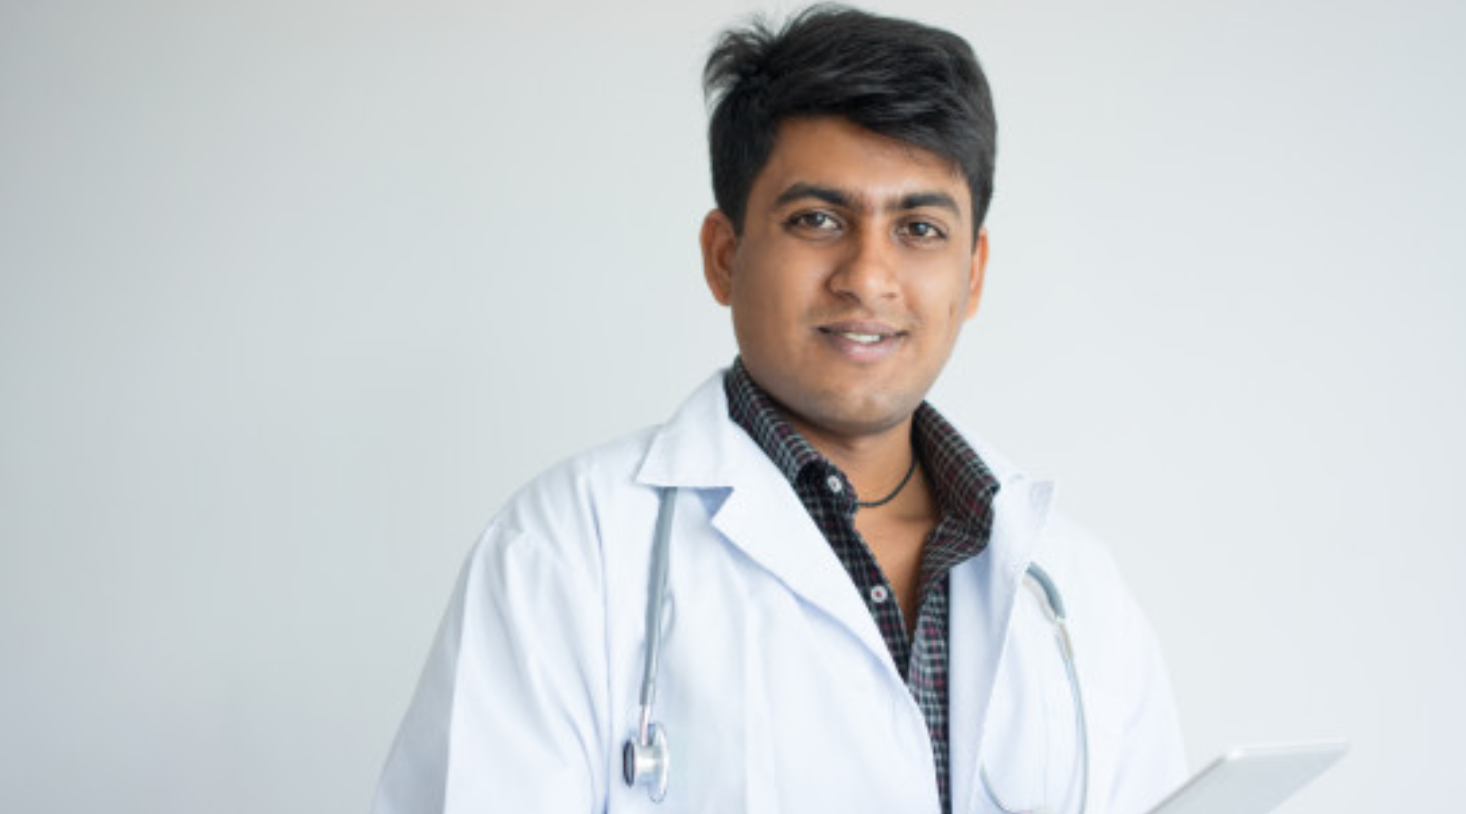 Dr. Sunil Jagani